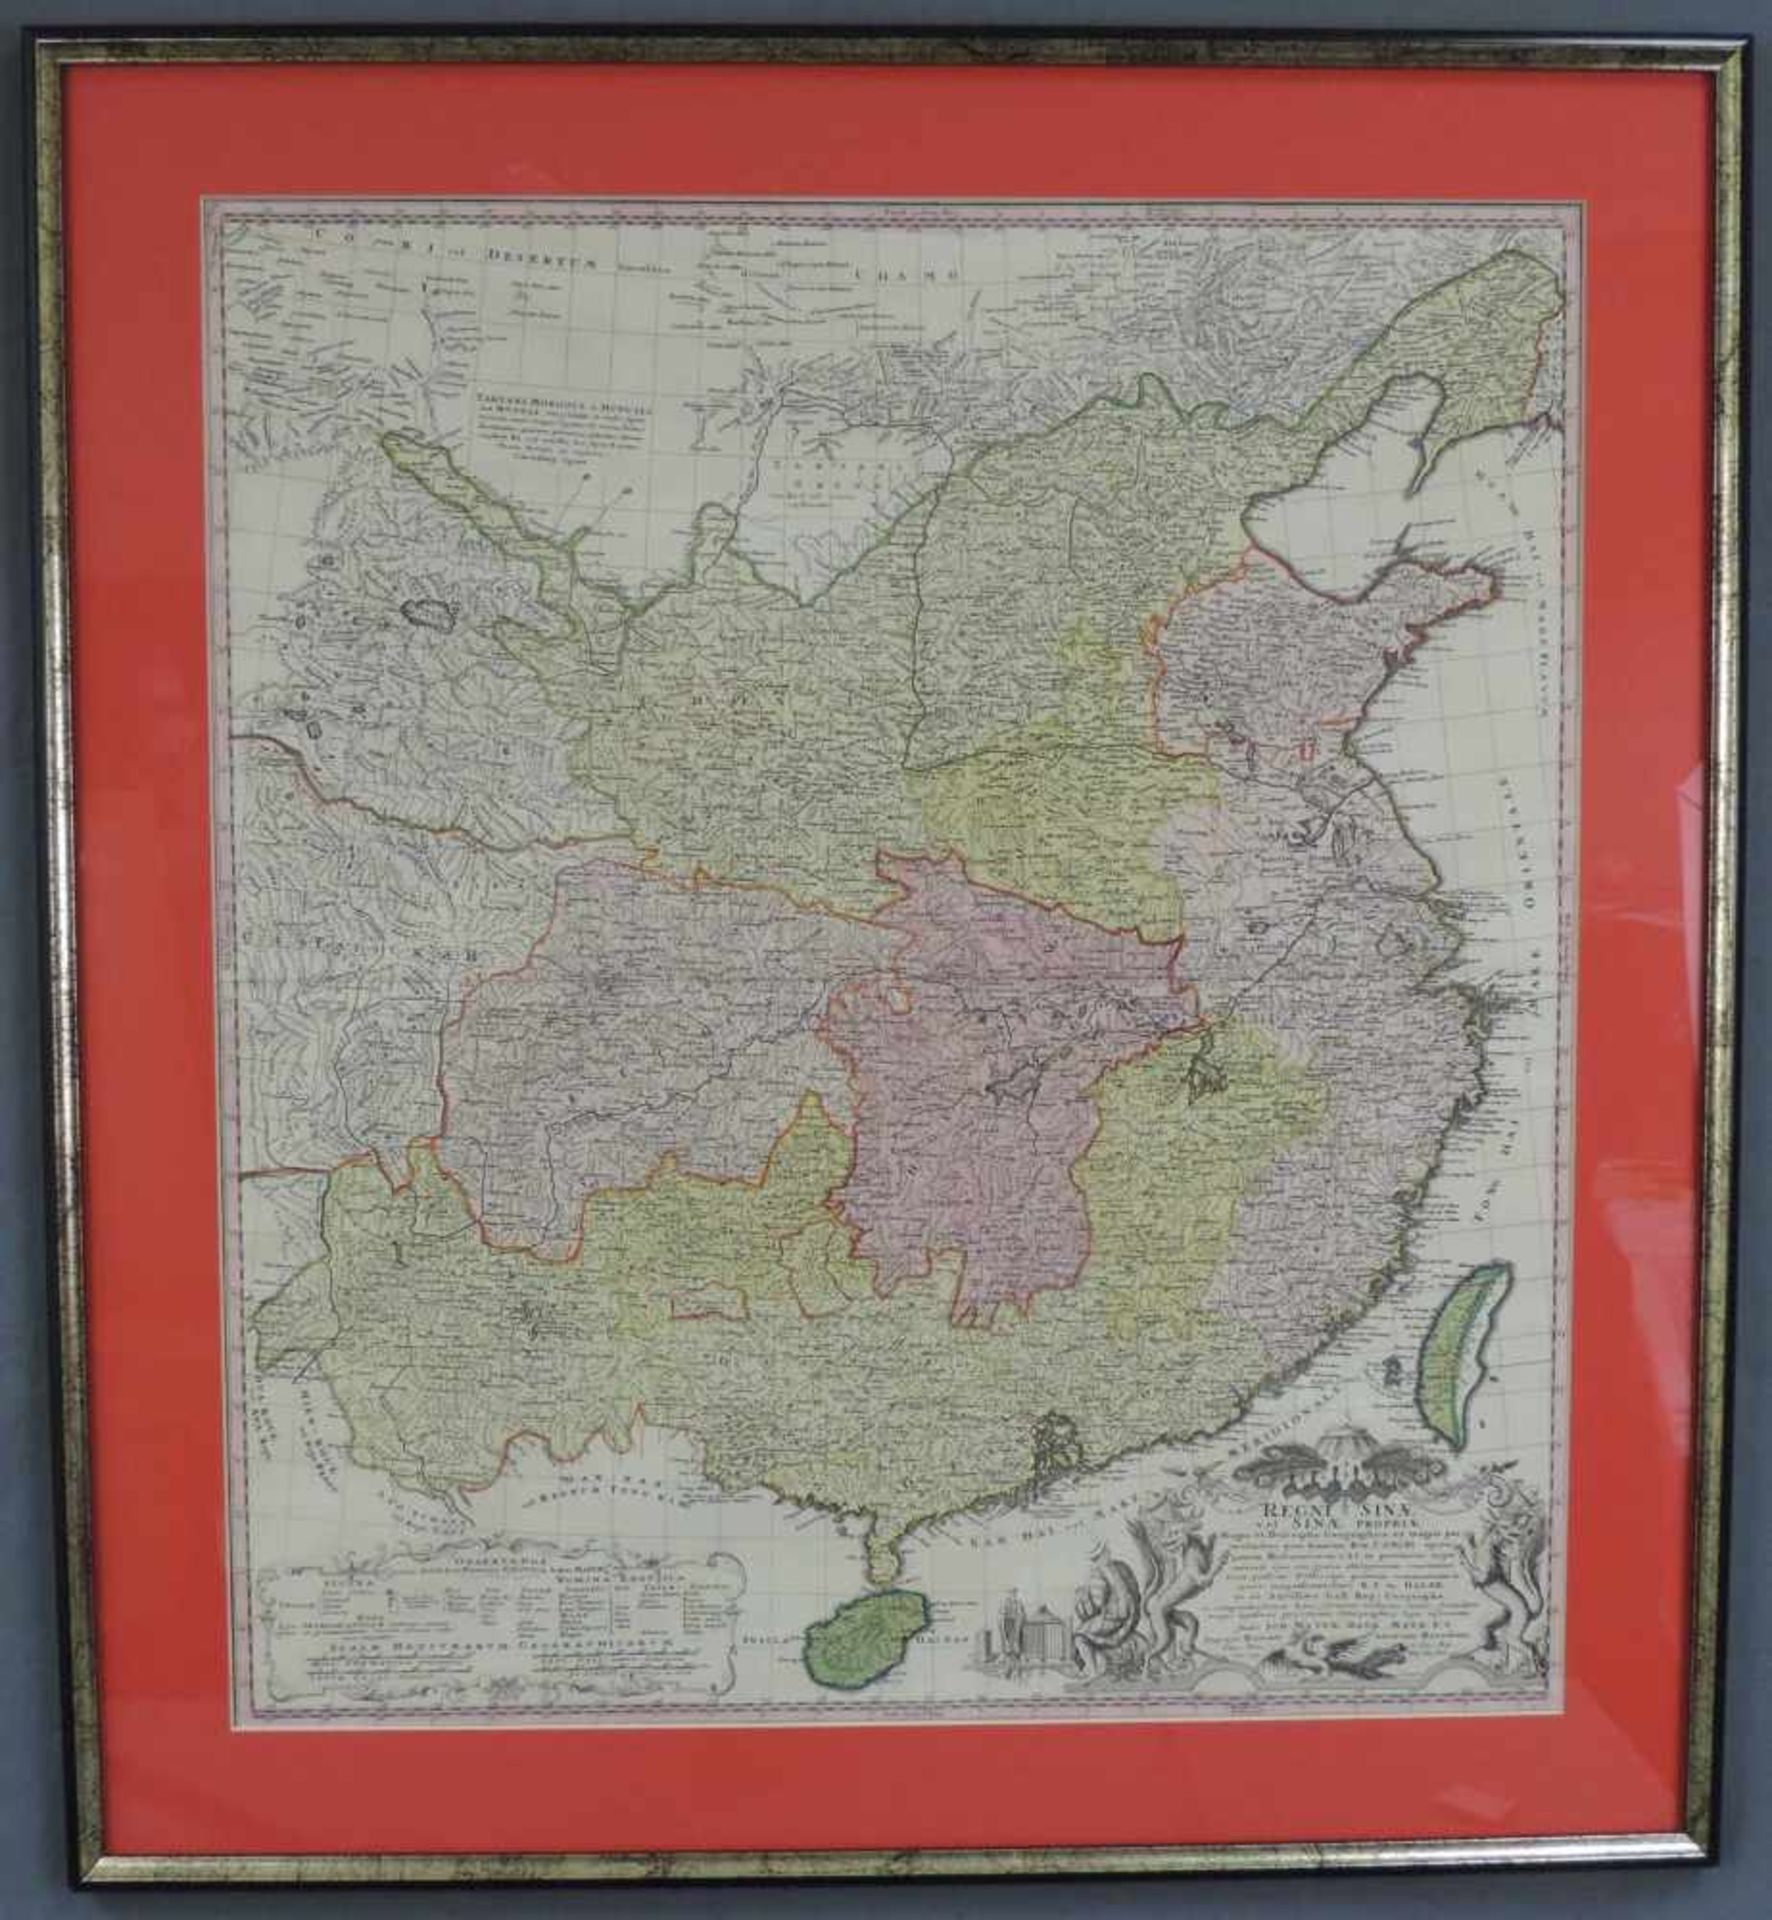 Johann Baptista HOMANN (1664 - 1724) Erben. Karte von China. 580 mm x 520 mm. Eine große und